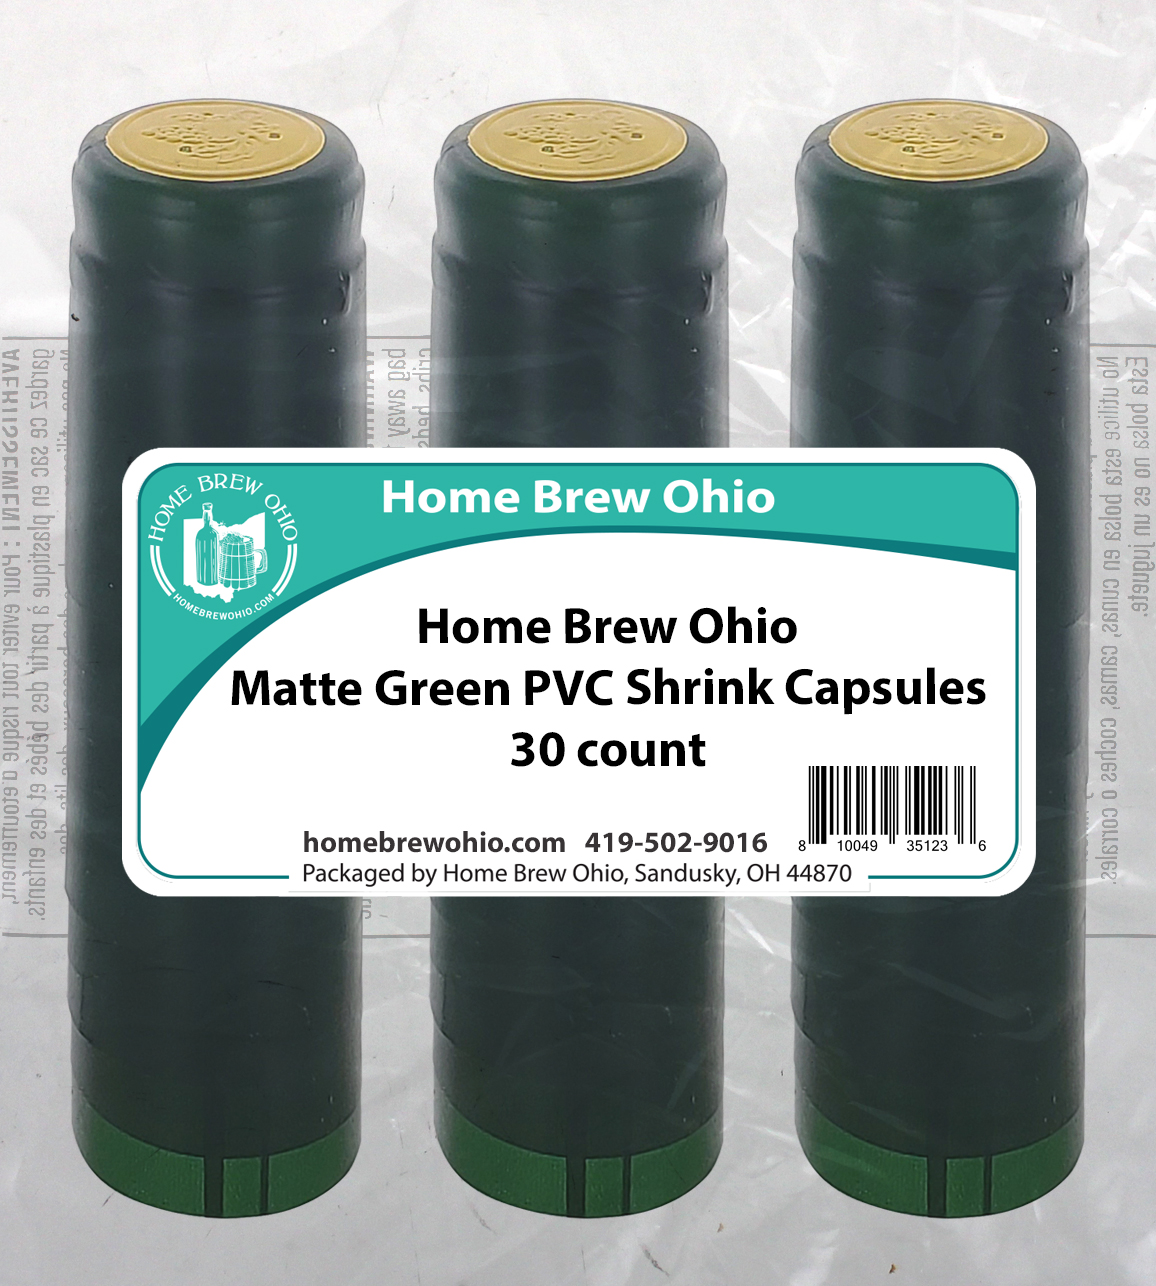 HOME BREW OHIO HOMEBREWOHIO.COM Home Brew Ohio Matte Green PVC Shrink Capsules 30 count